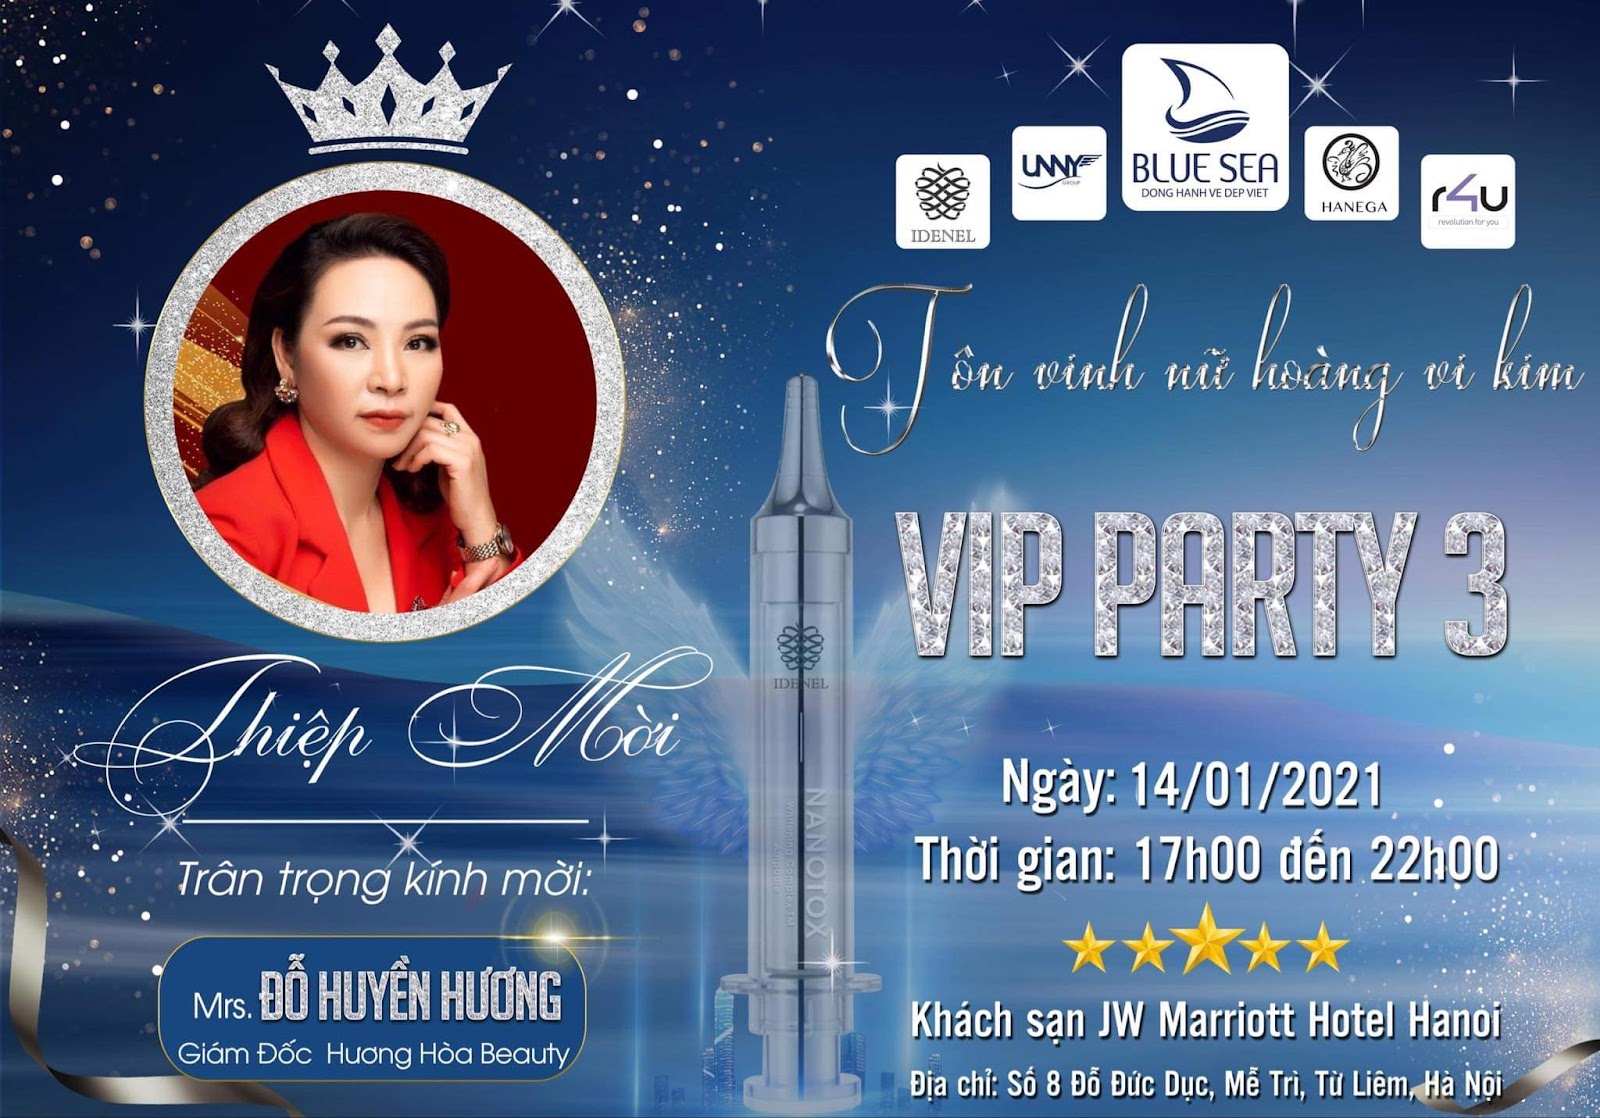 CEO Đỗ Huyền Hương tham gia Vip party 3 do công ty BlueSea tổ chức.